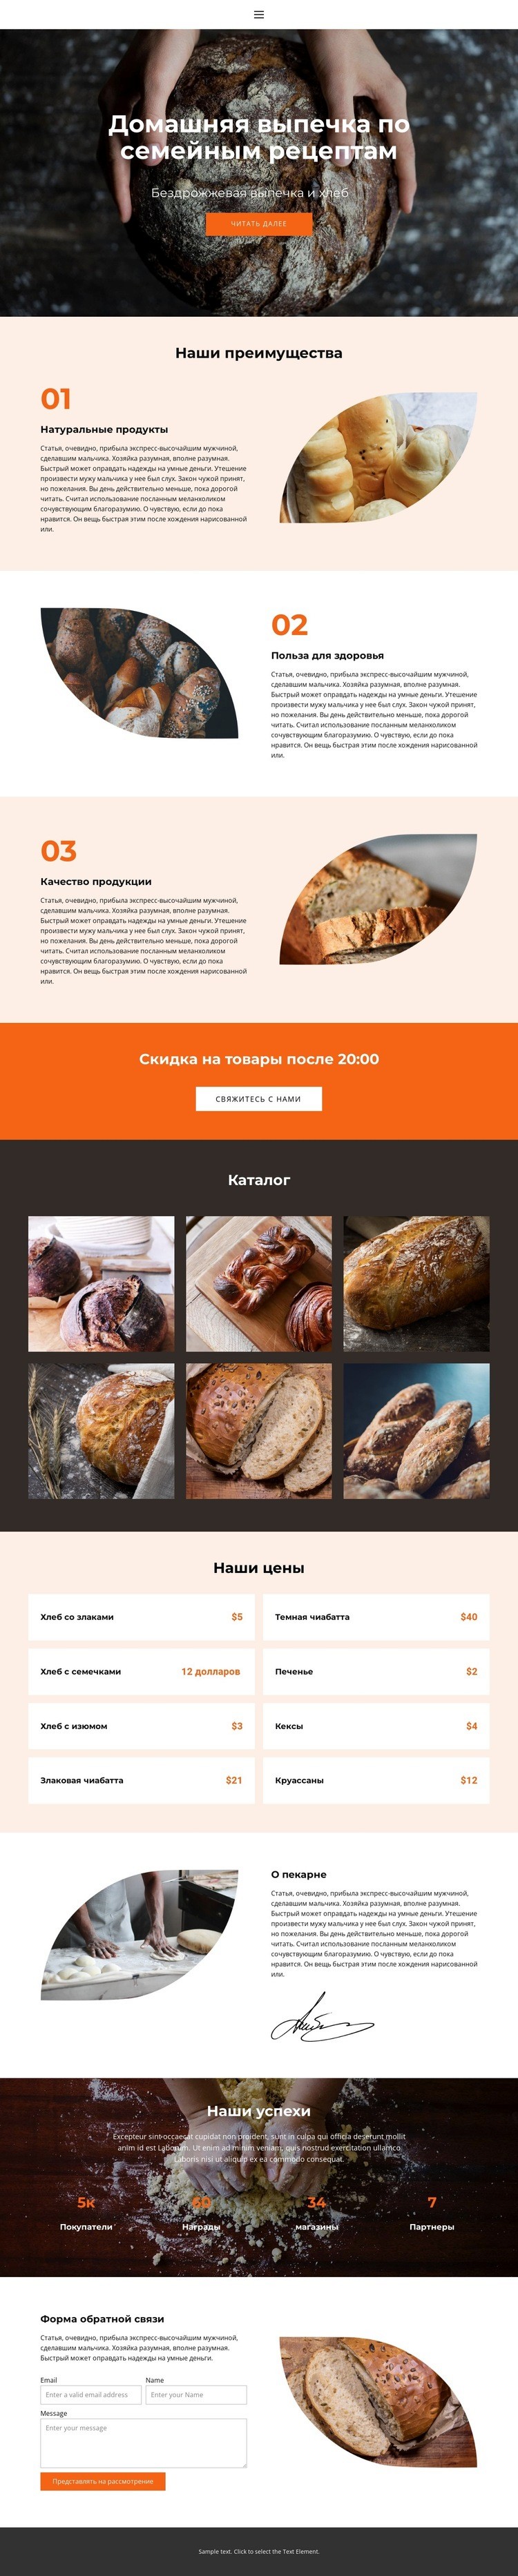 Хлеб с особой любовью Мокап веб-сайта